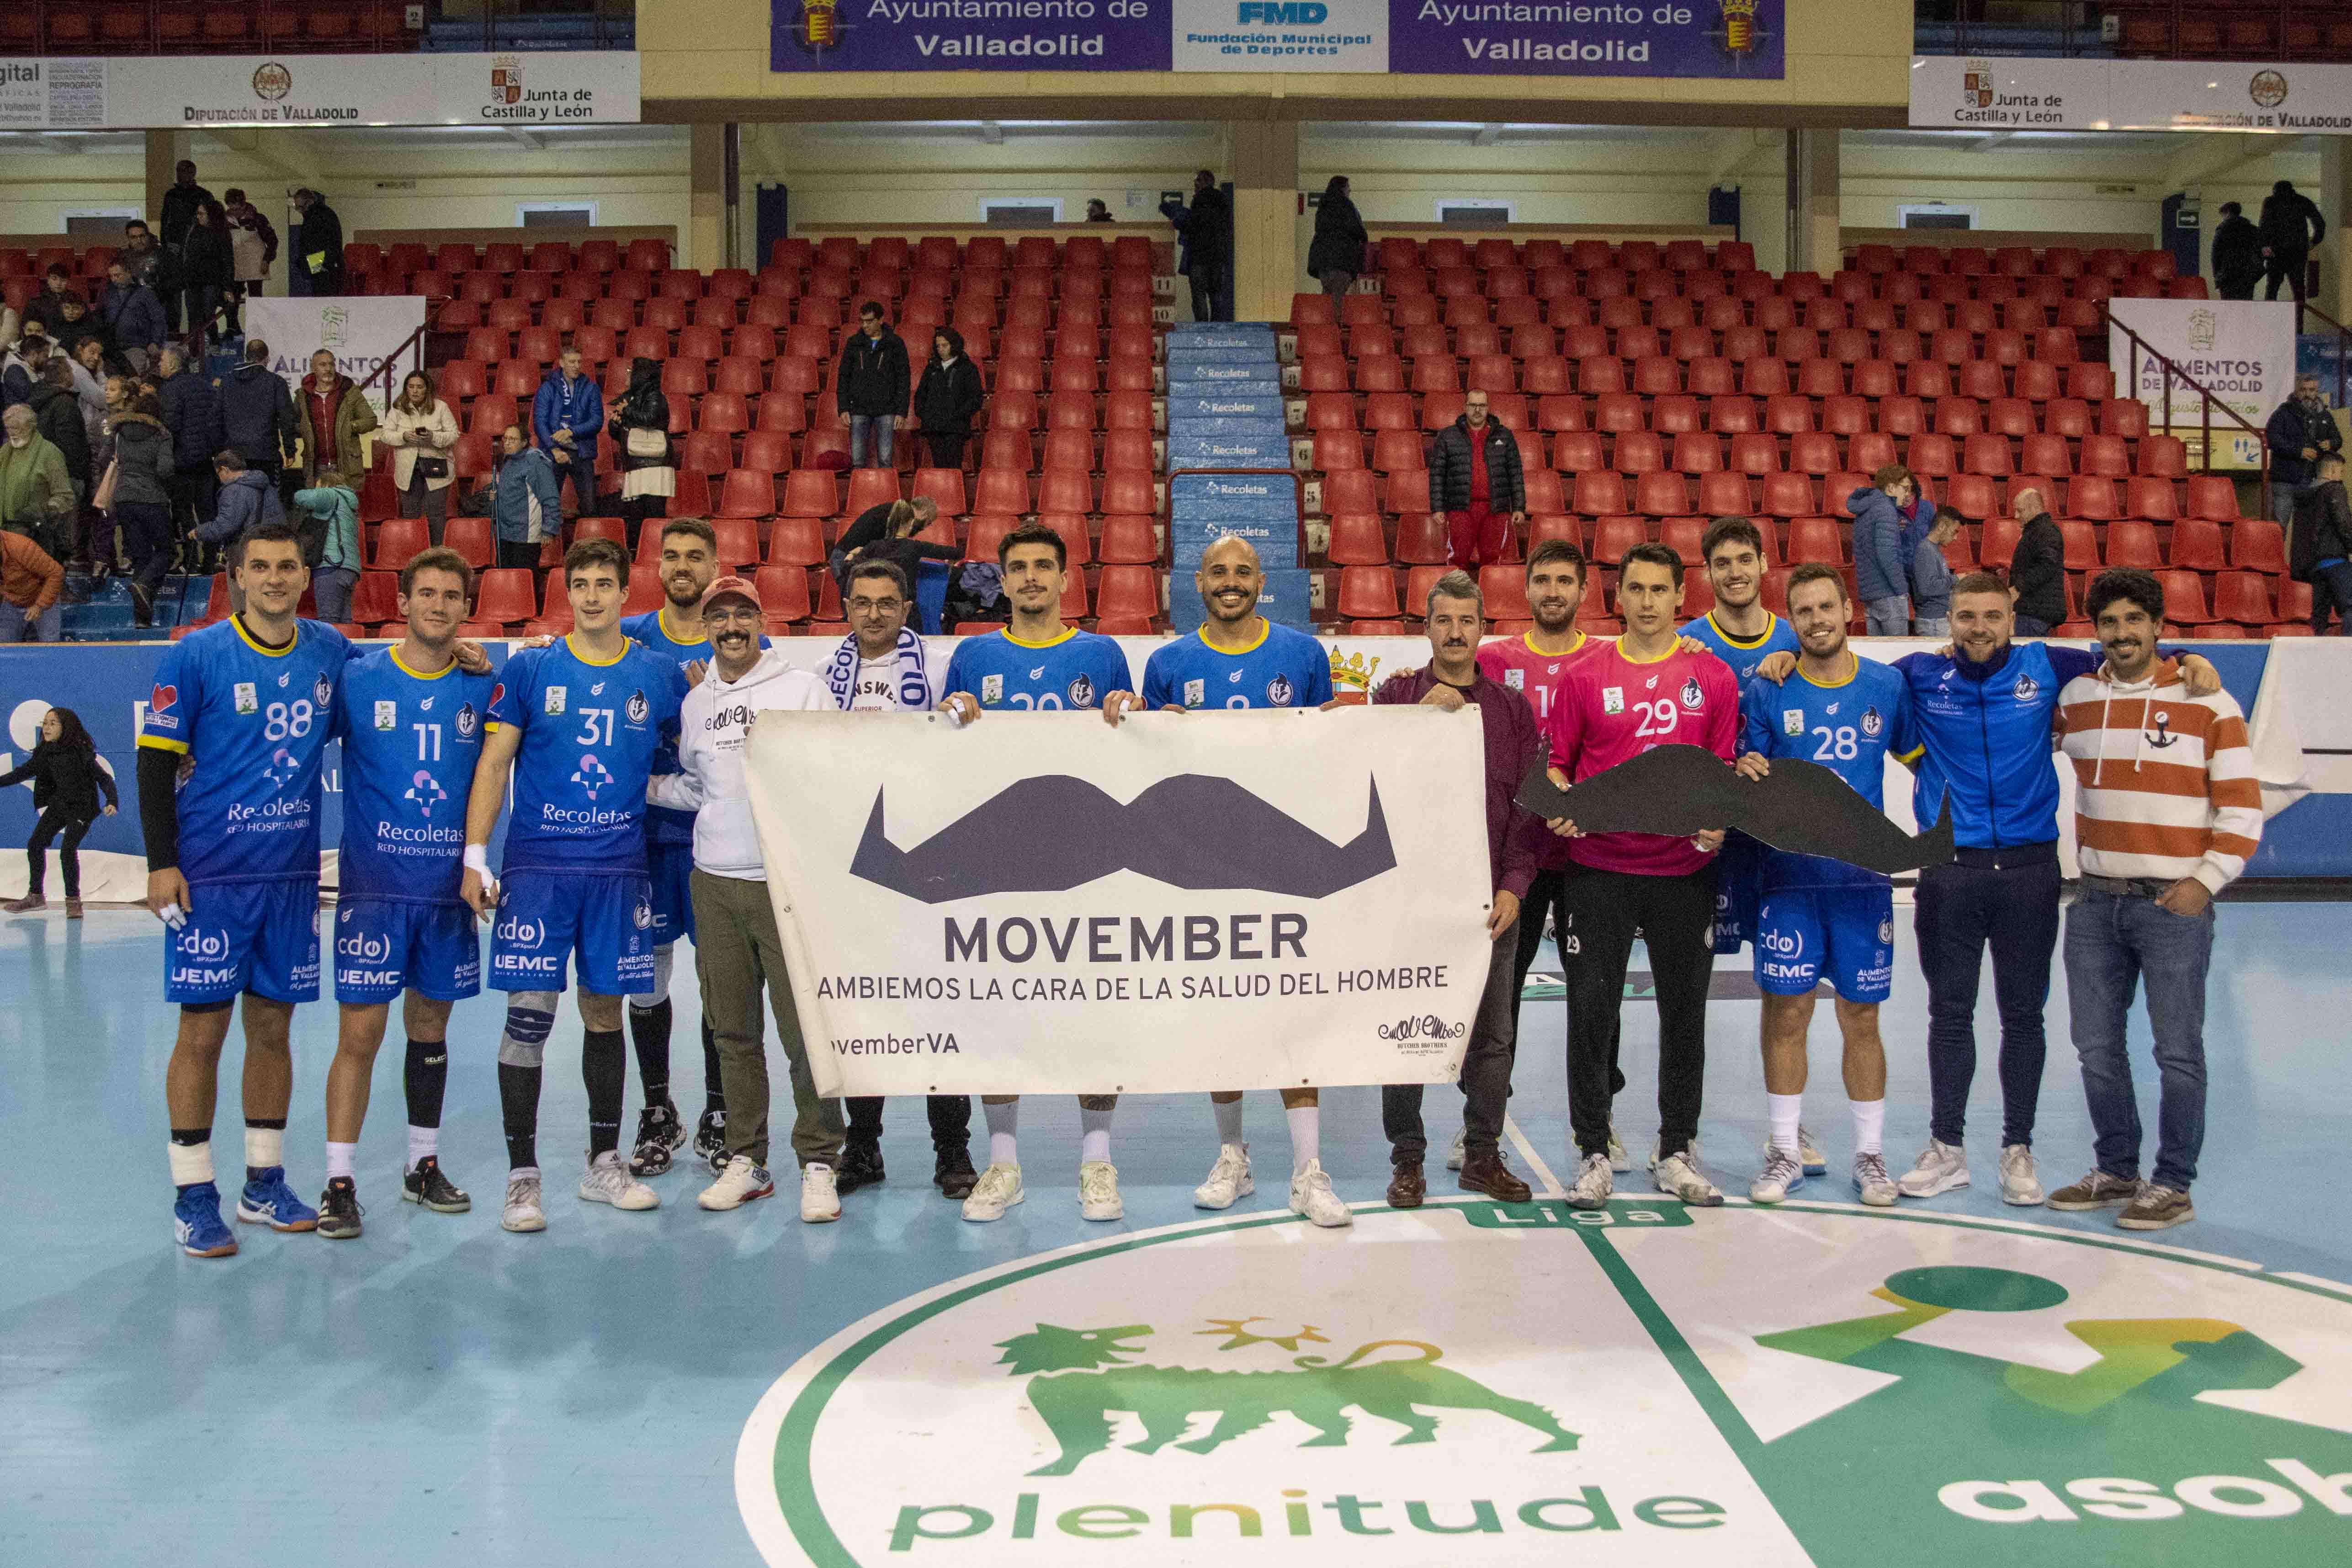 Un año más el Recoletas Atlético Valladolid apoya la iniciativa Movember | Galería 6 / 6